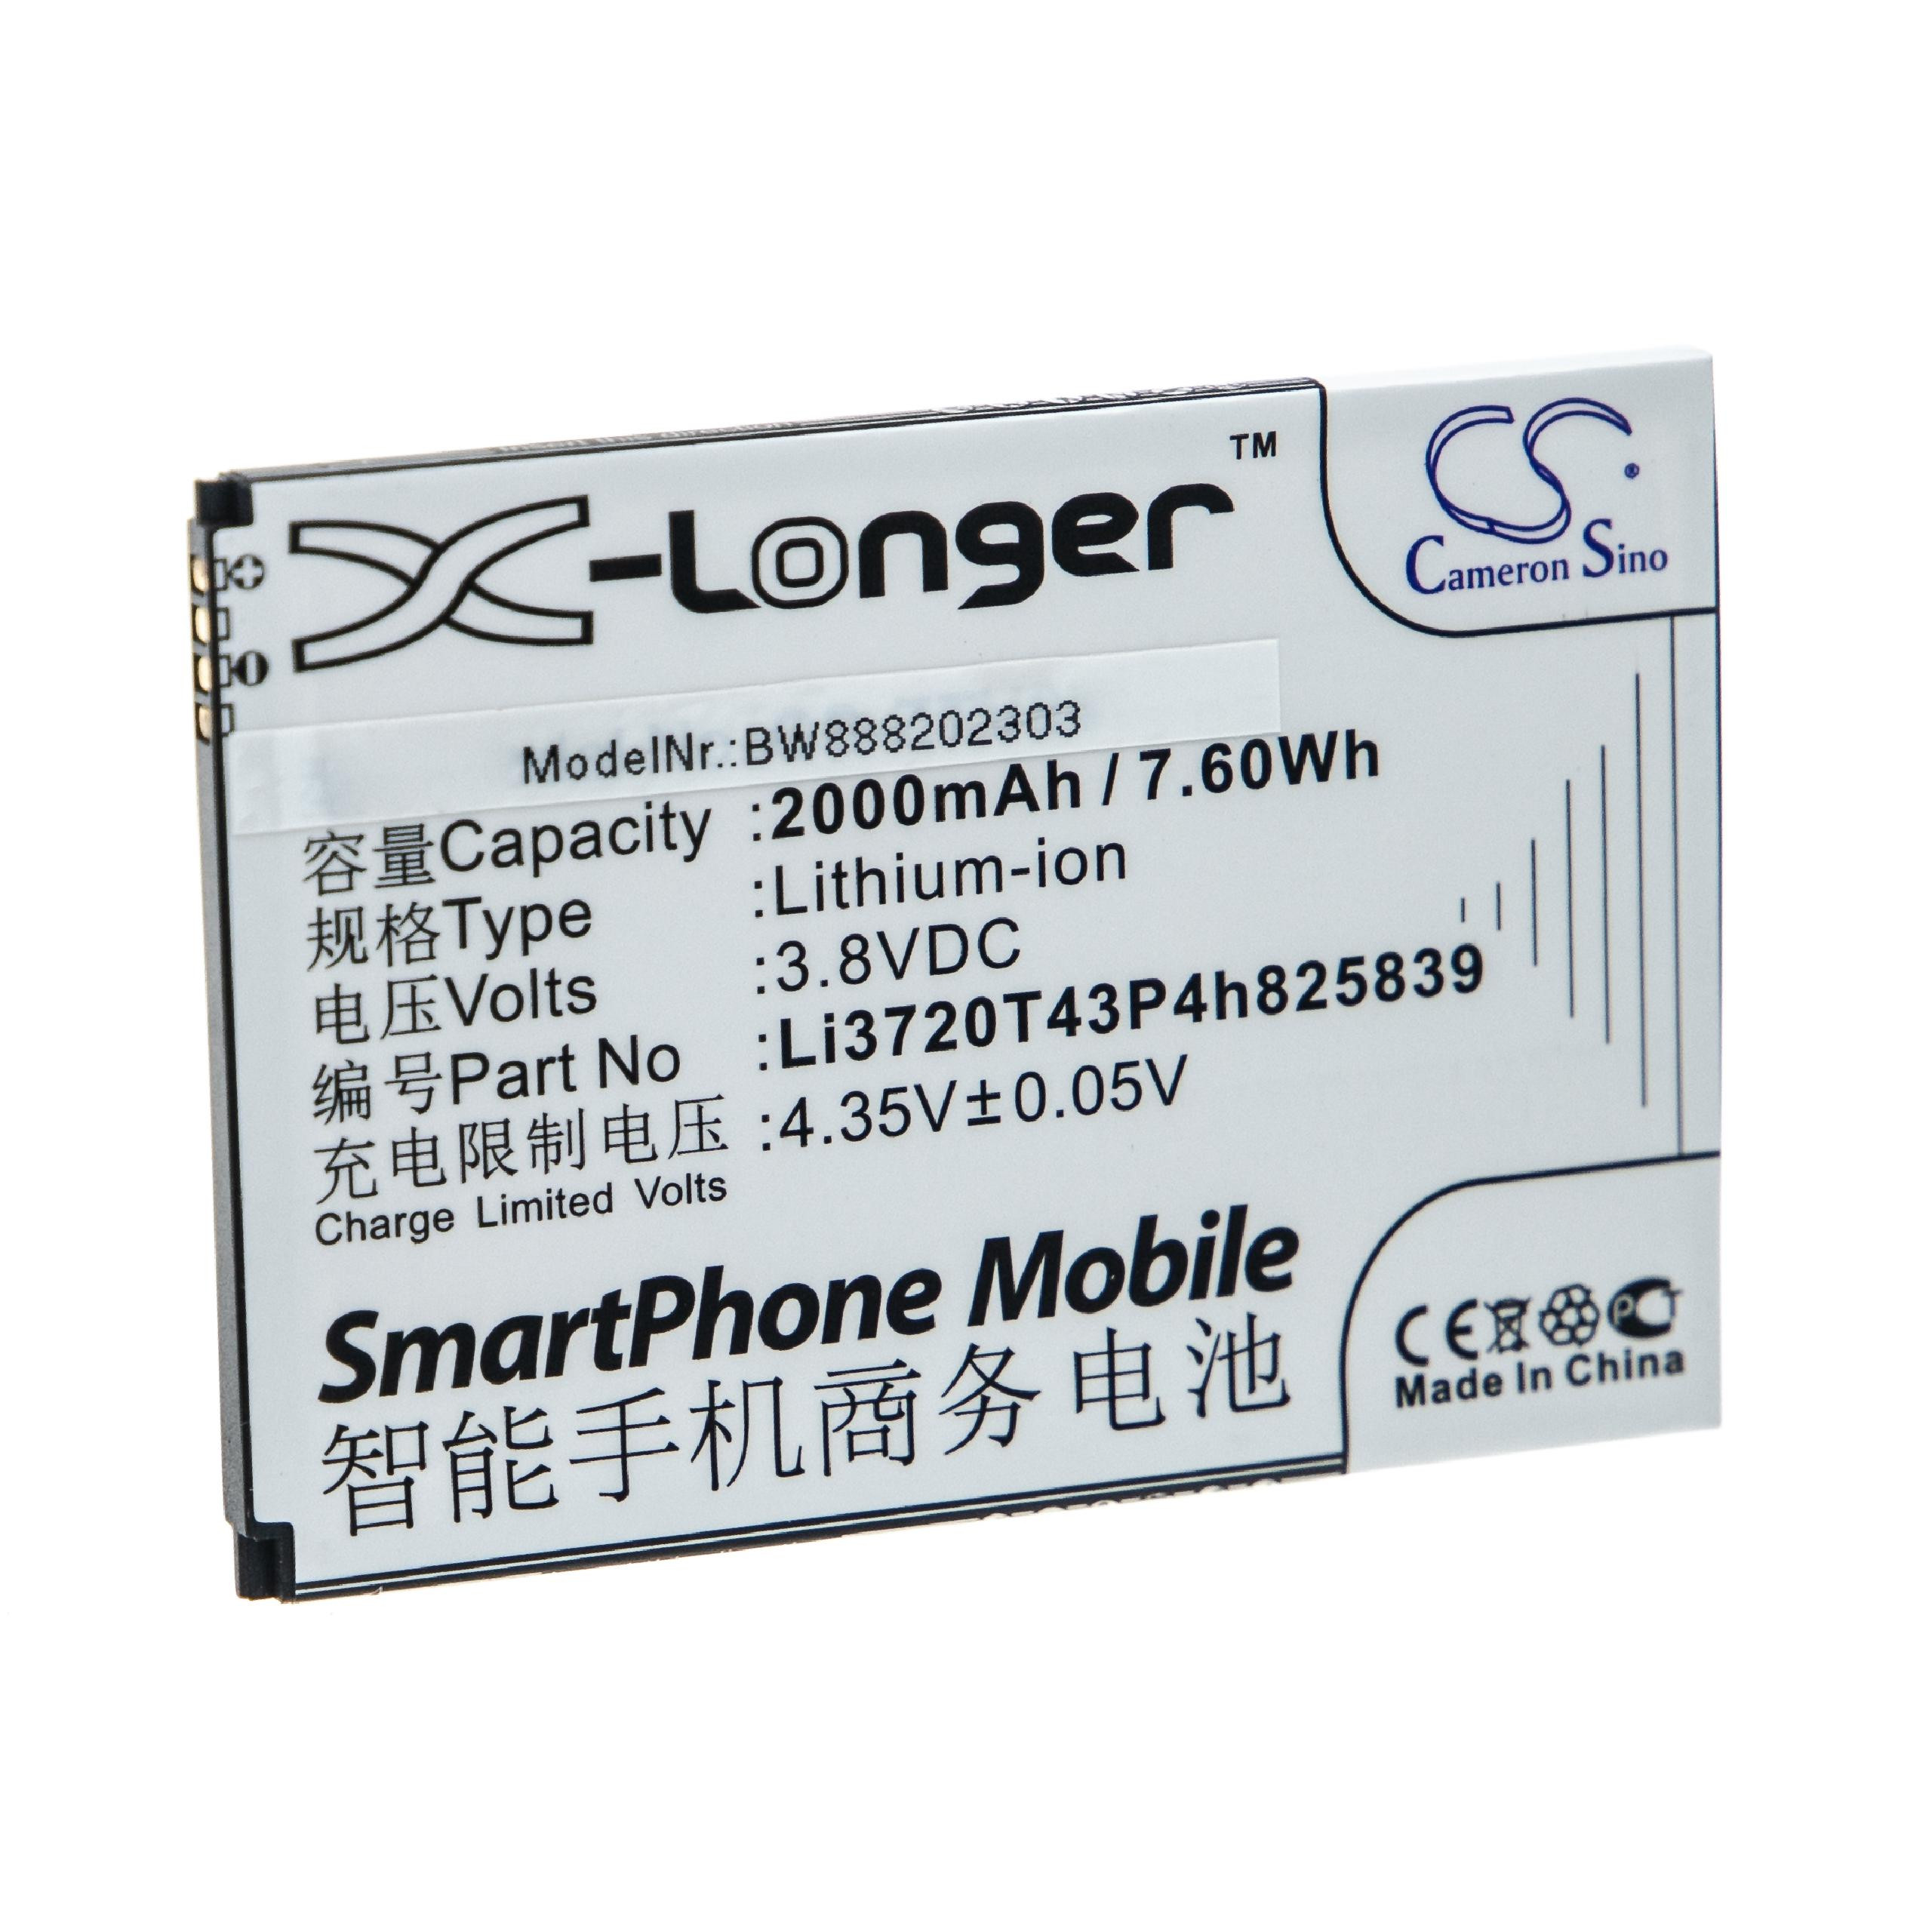 Li-Ion-Akku - 2000mAh (3.8V) für Orange Reyo Handy, Smartphone, Telefon wie Li3720T43P4h825839